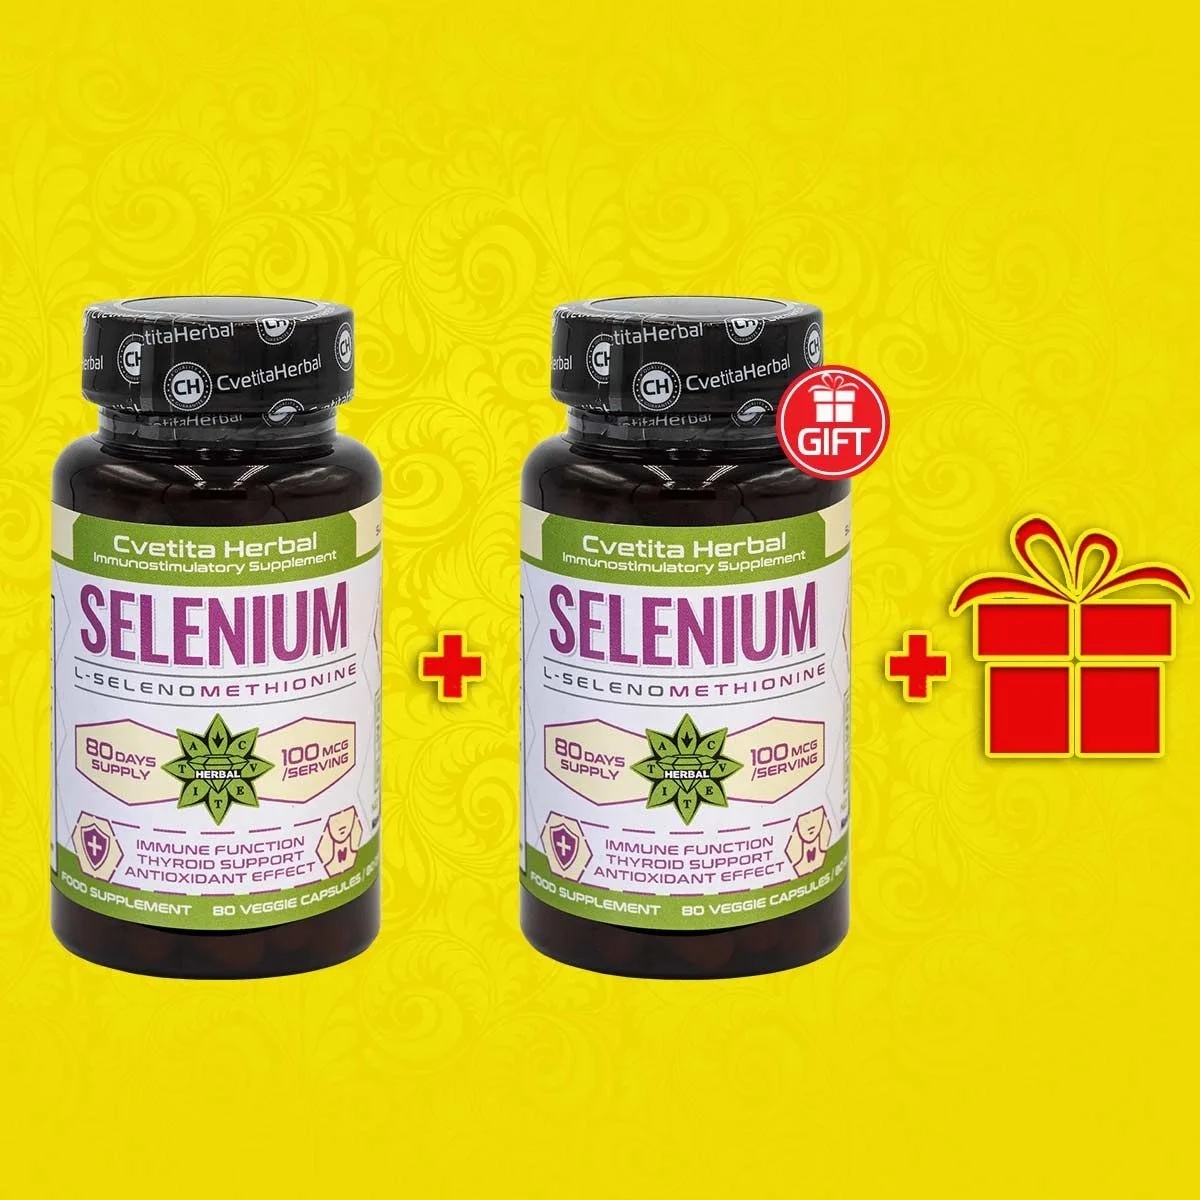 Cvetita Herbal 1+1 FREE Selenium - Selenium - 80 capsules + GIFT Zinc